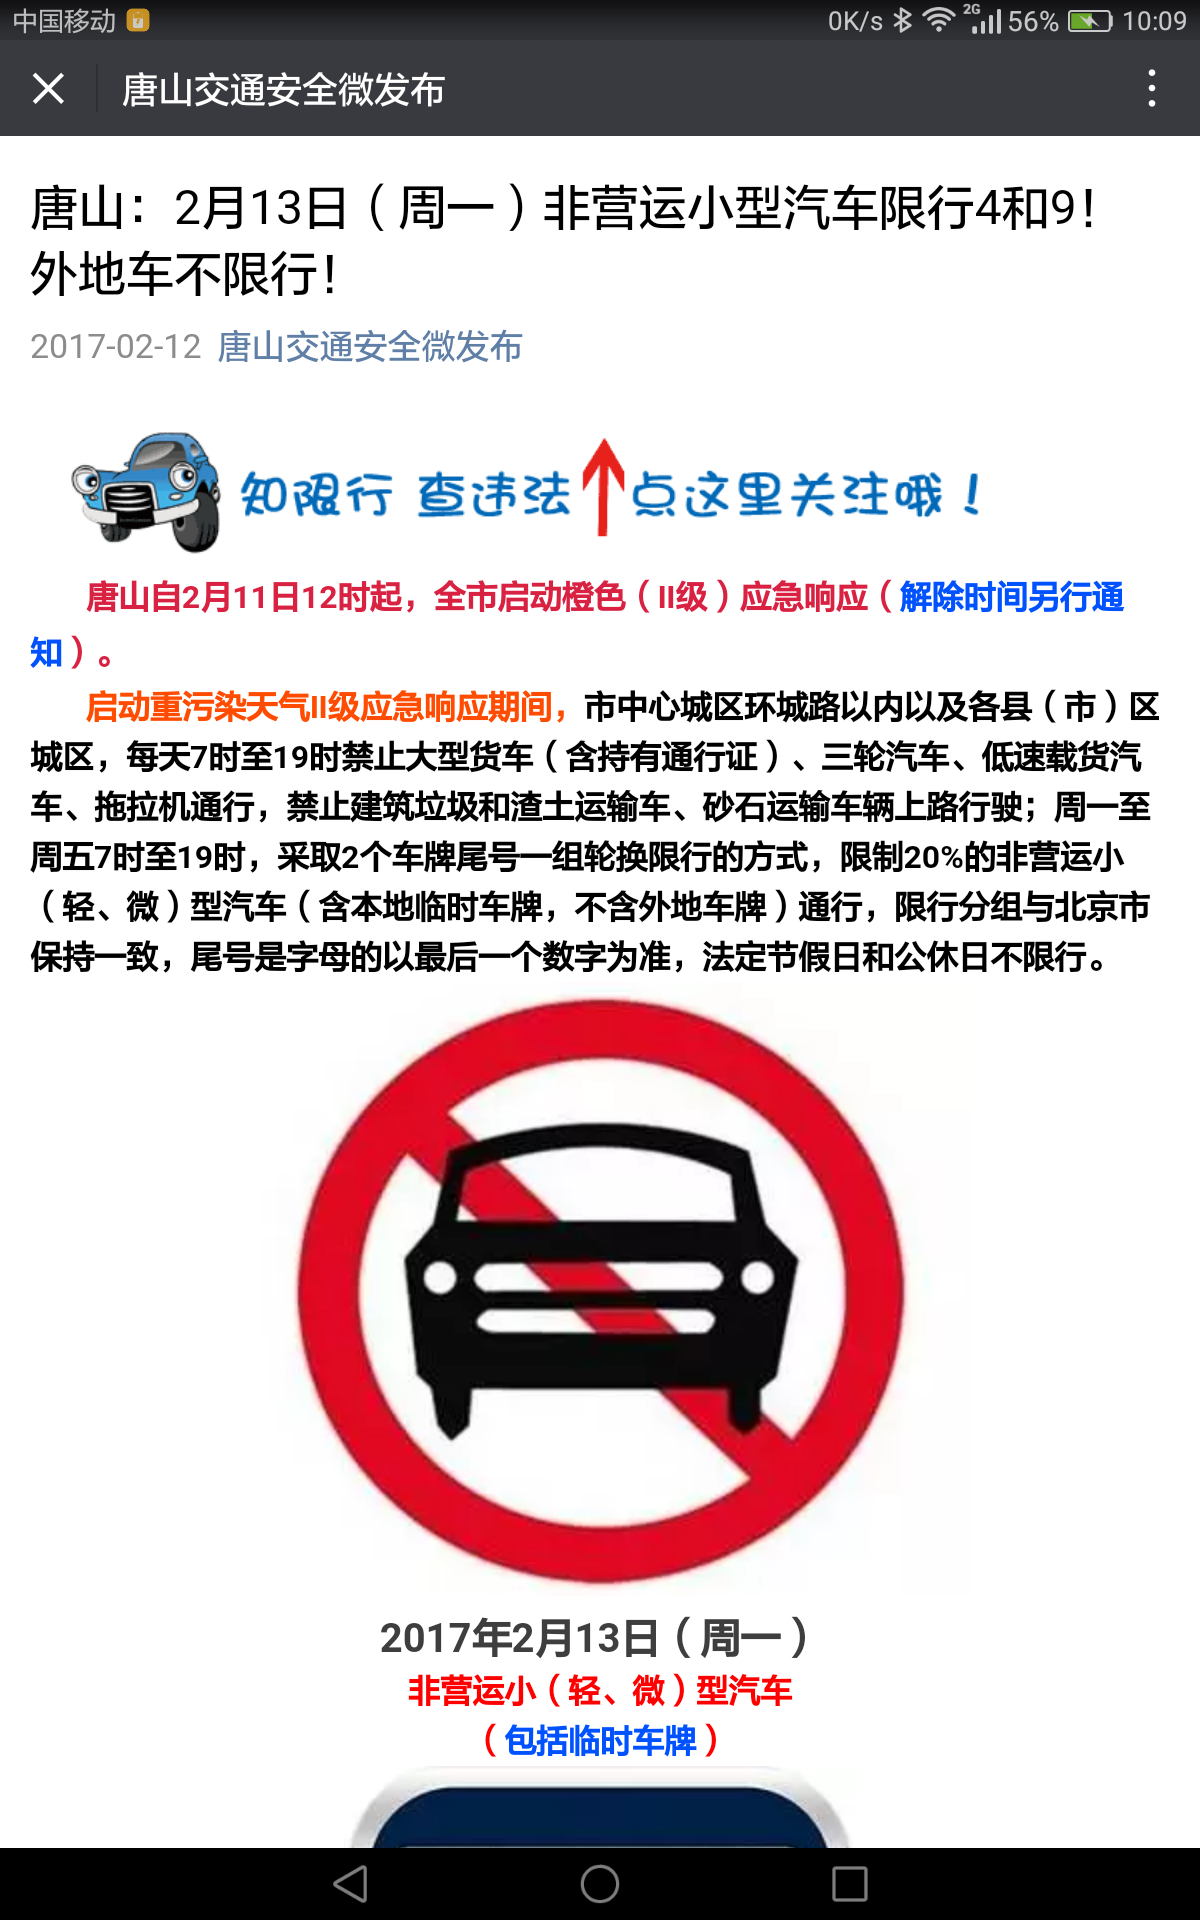 如何看待北京限制外地车进二环? - 张强的回答